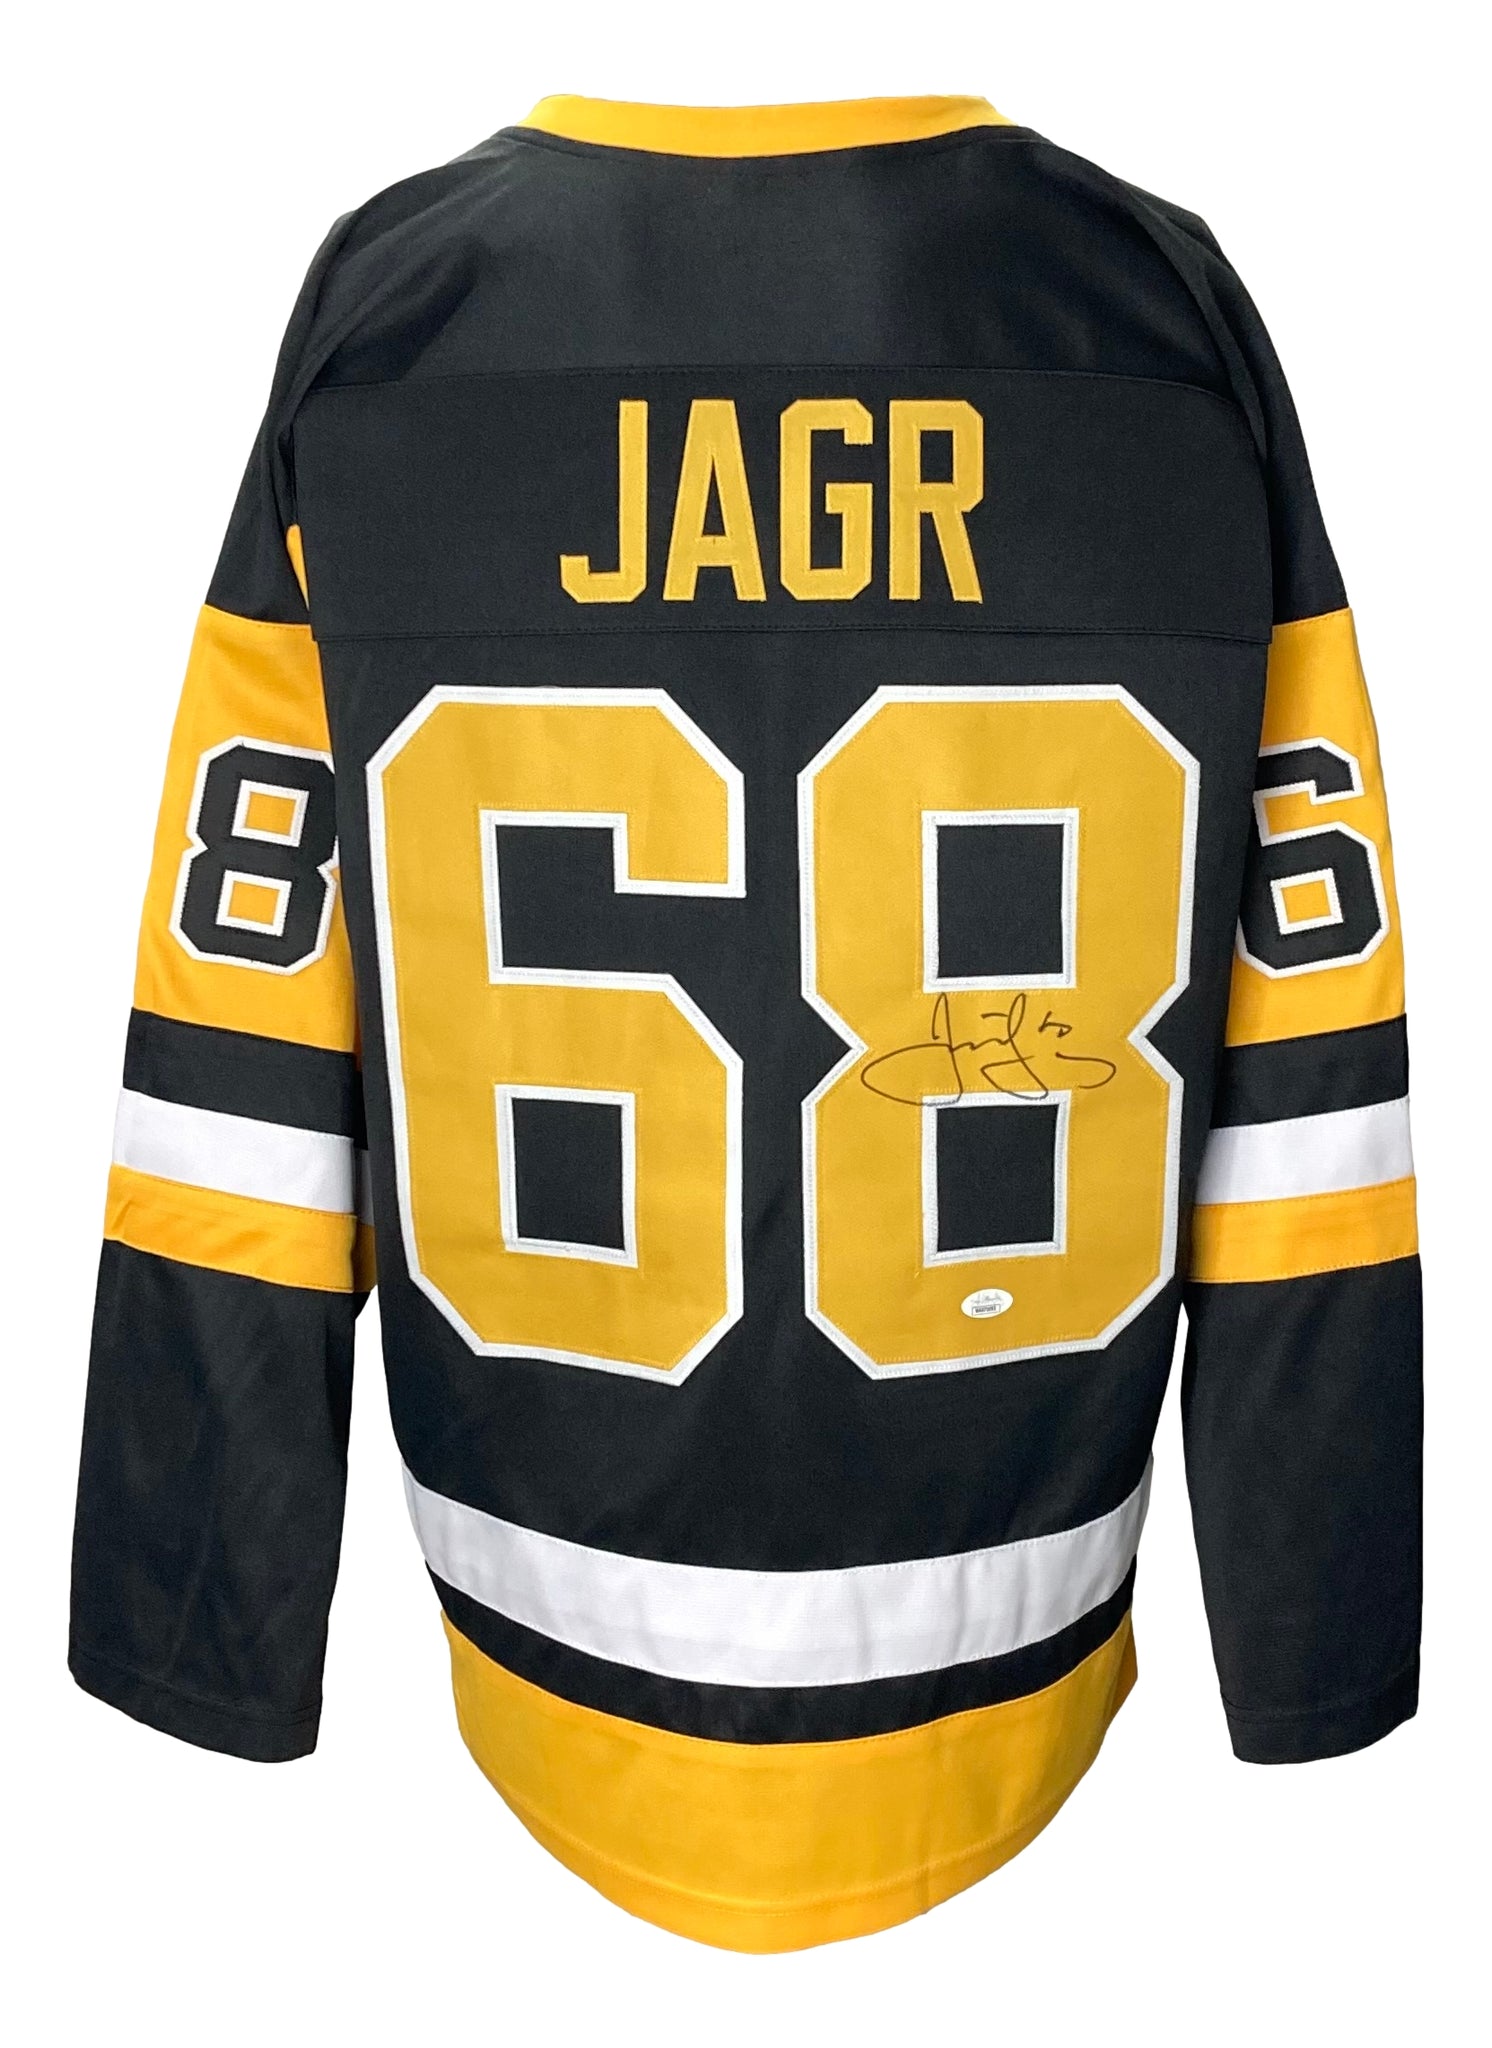 Jaromir Jagr Autographed Custom New York Rangers Jersey Beckett